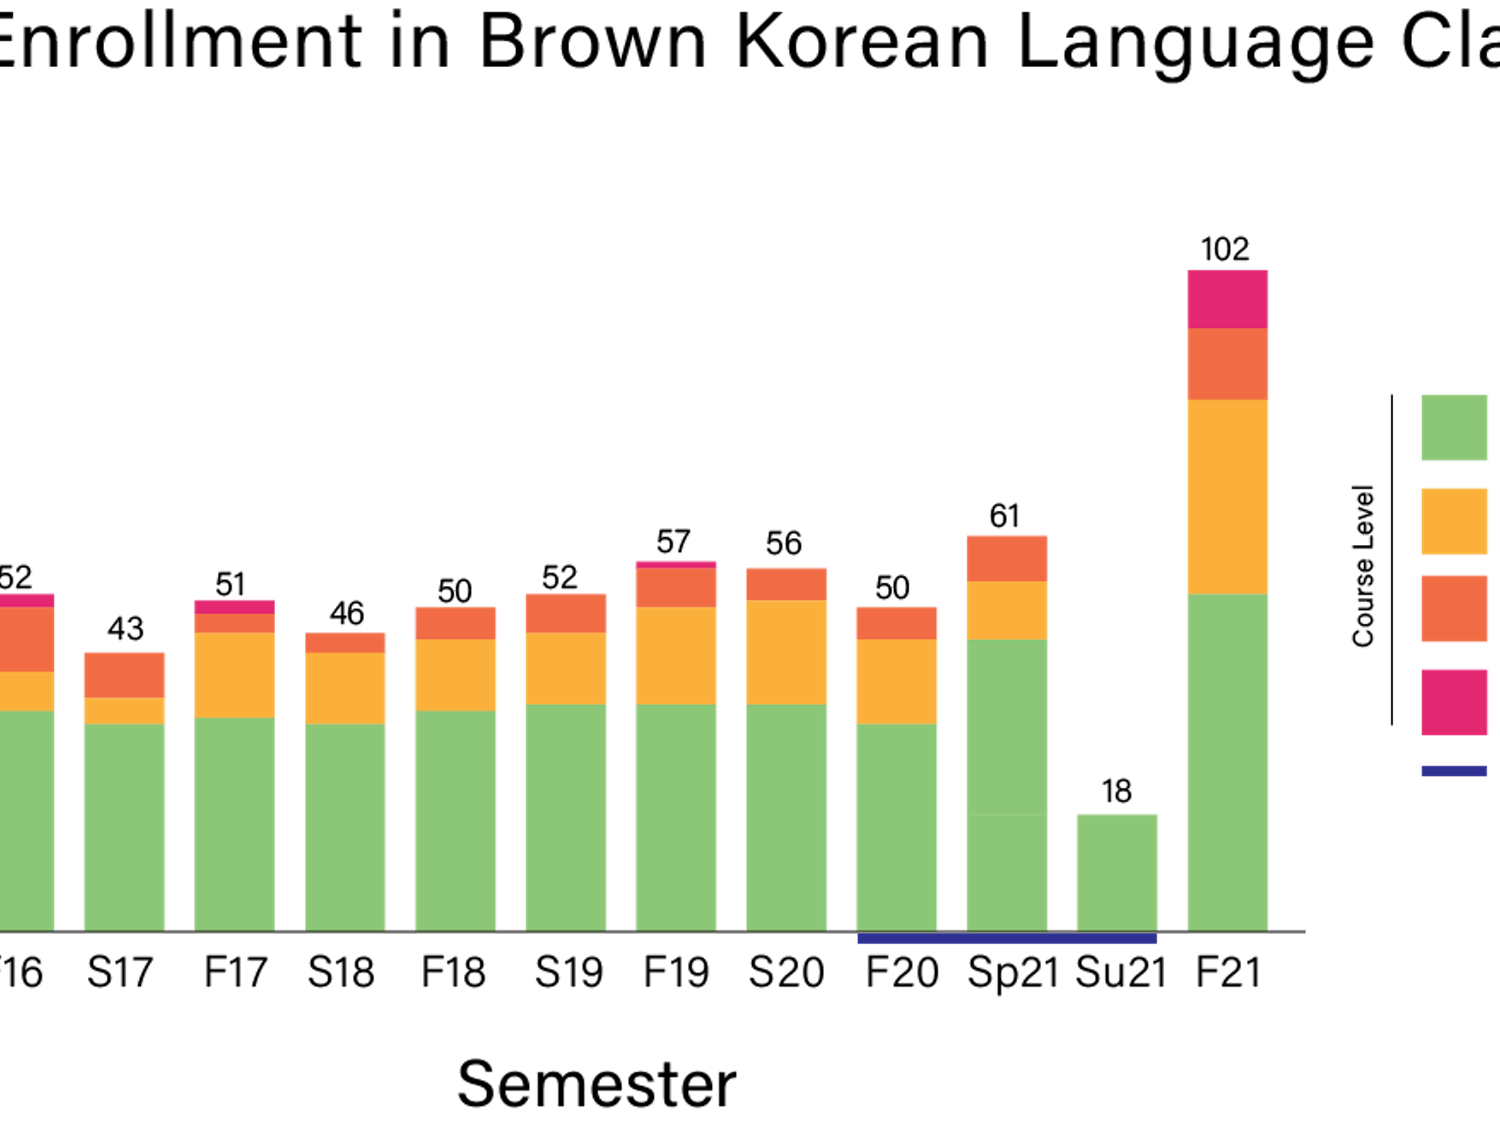 korean-enrollment_usha-bhalla_10-25-21.png